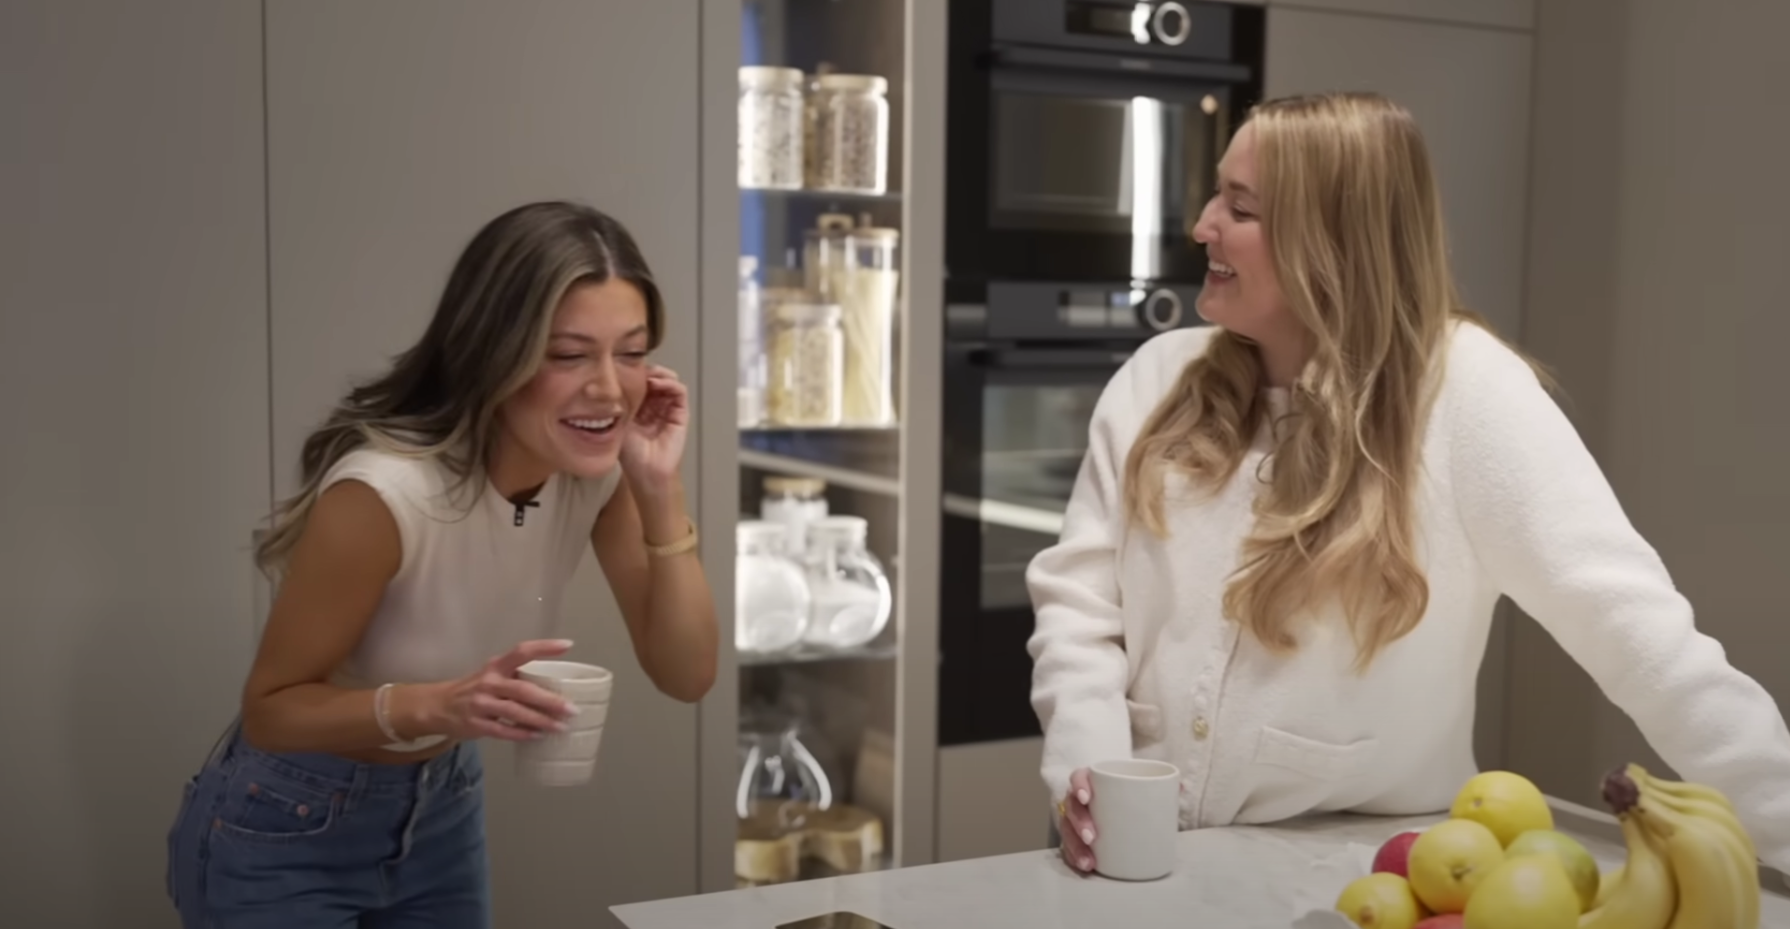 Bianca Ingrosso i Emelie Johanssons Youtubeserie ”I mitt badrumskåp”.